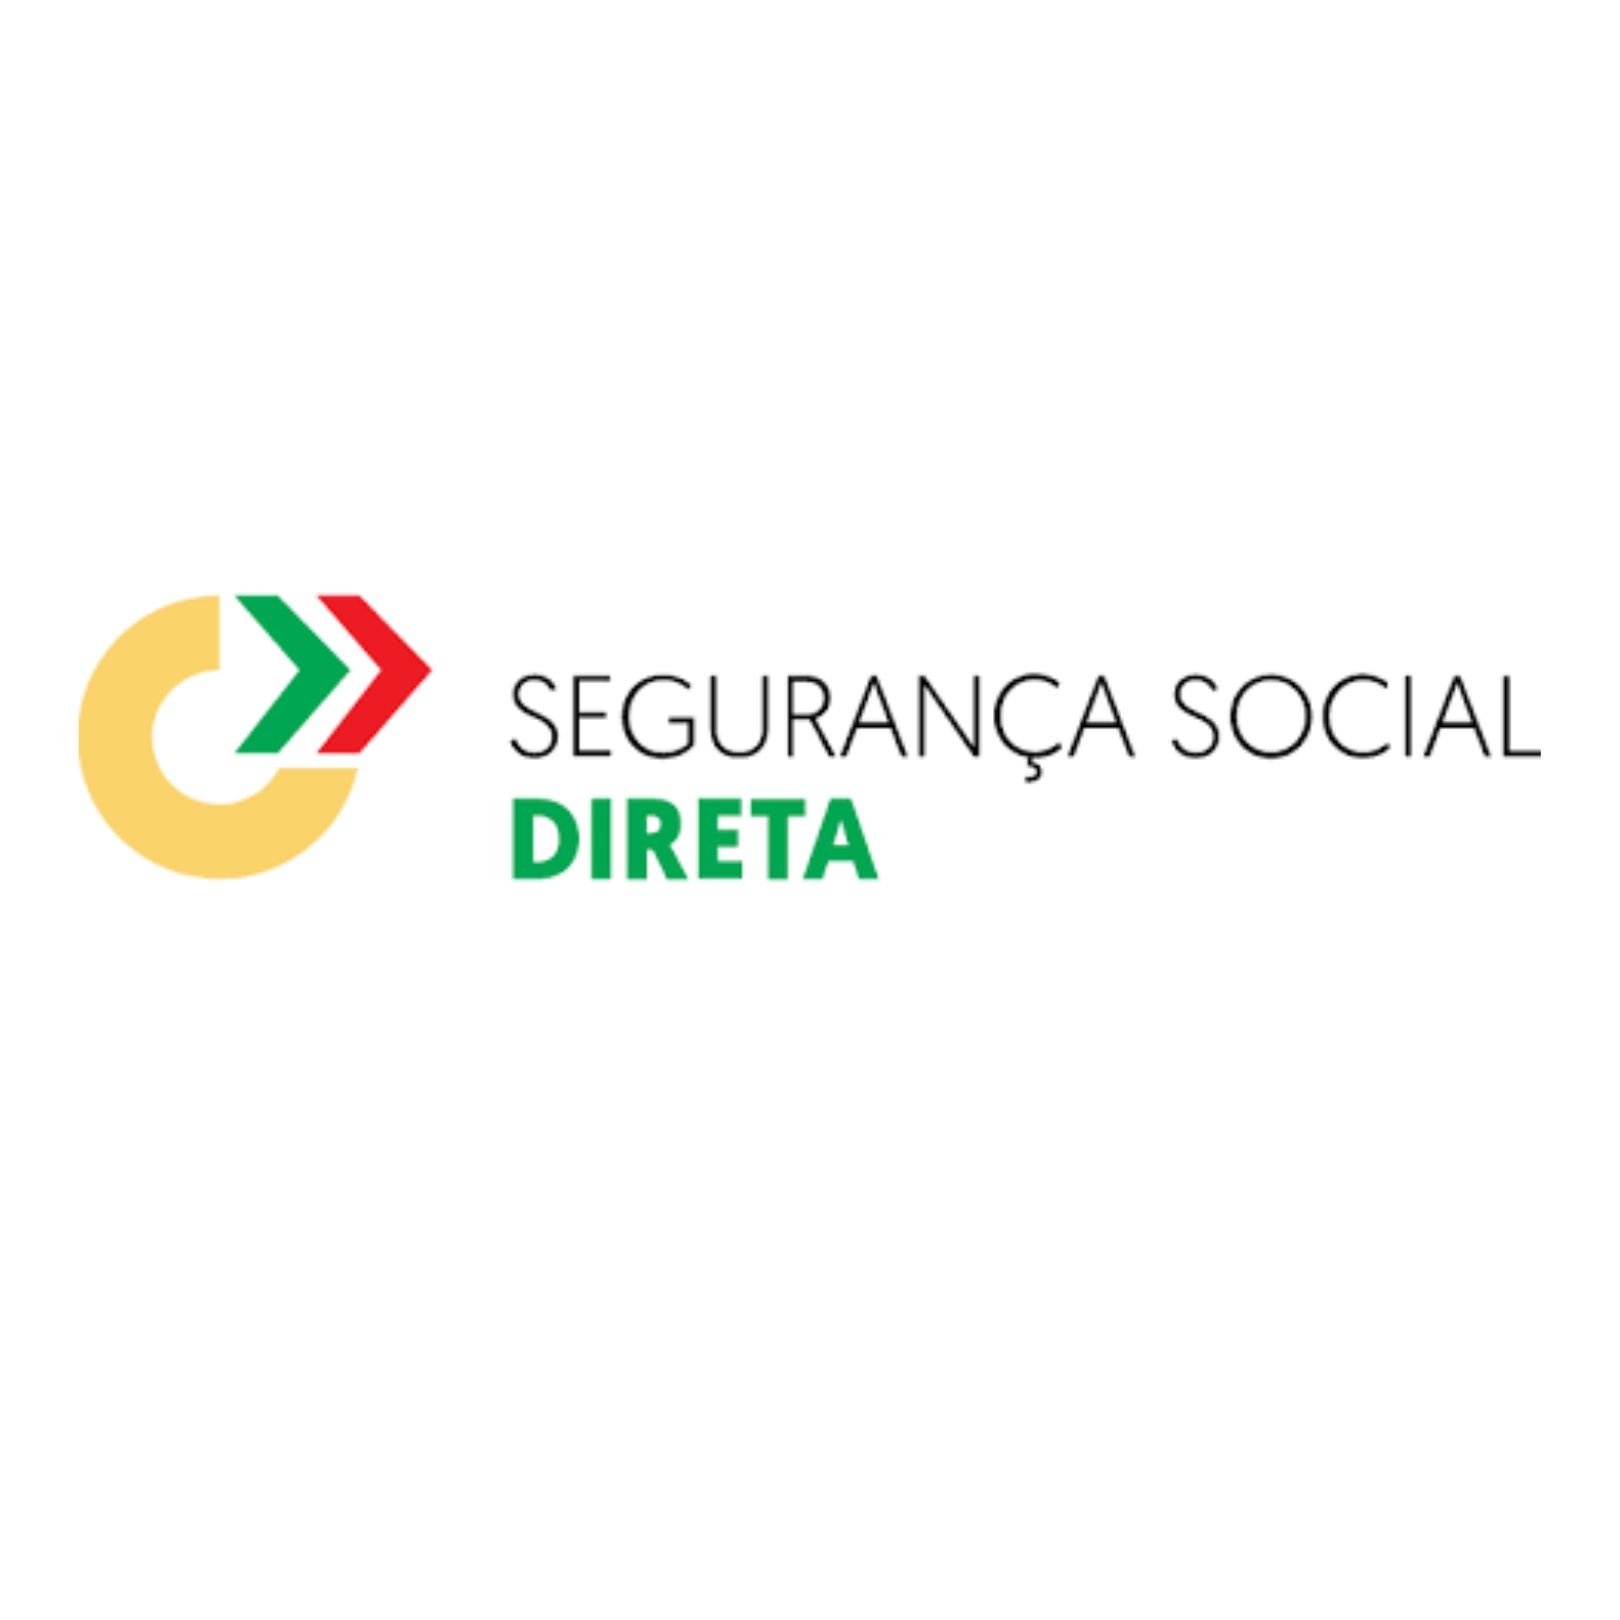 Imagem com o logo da Segurança Social Direta